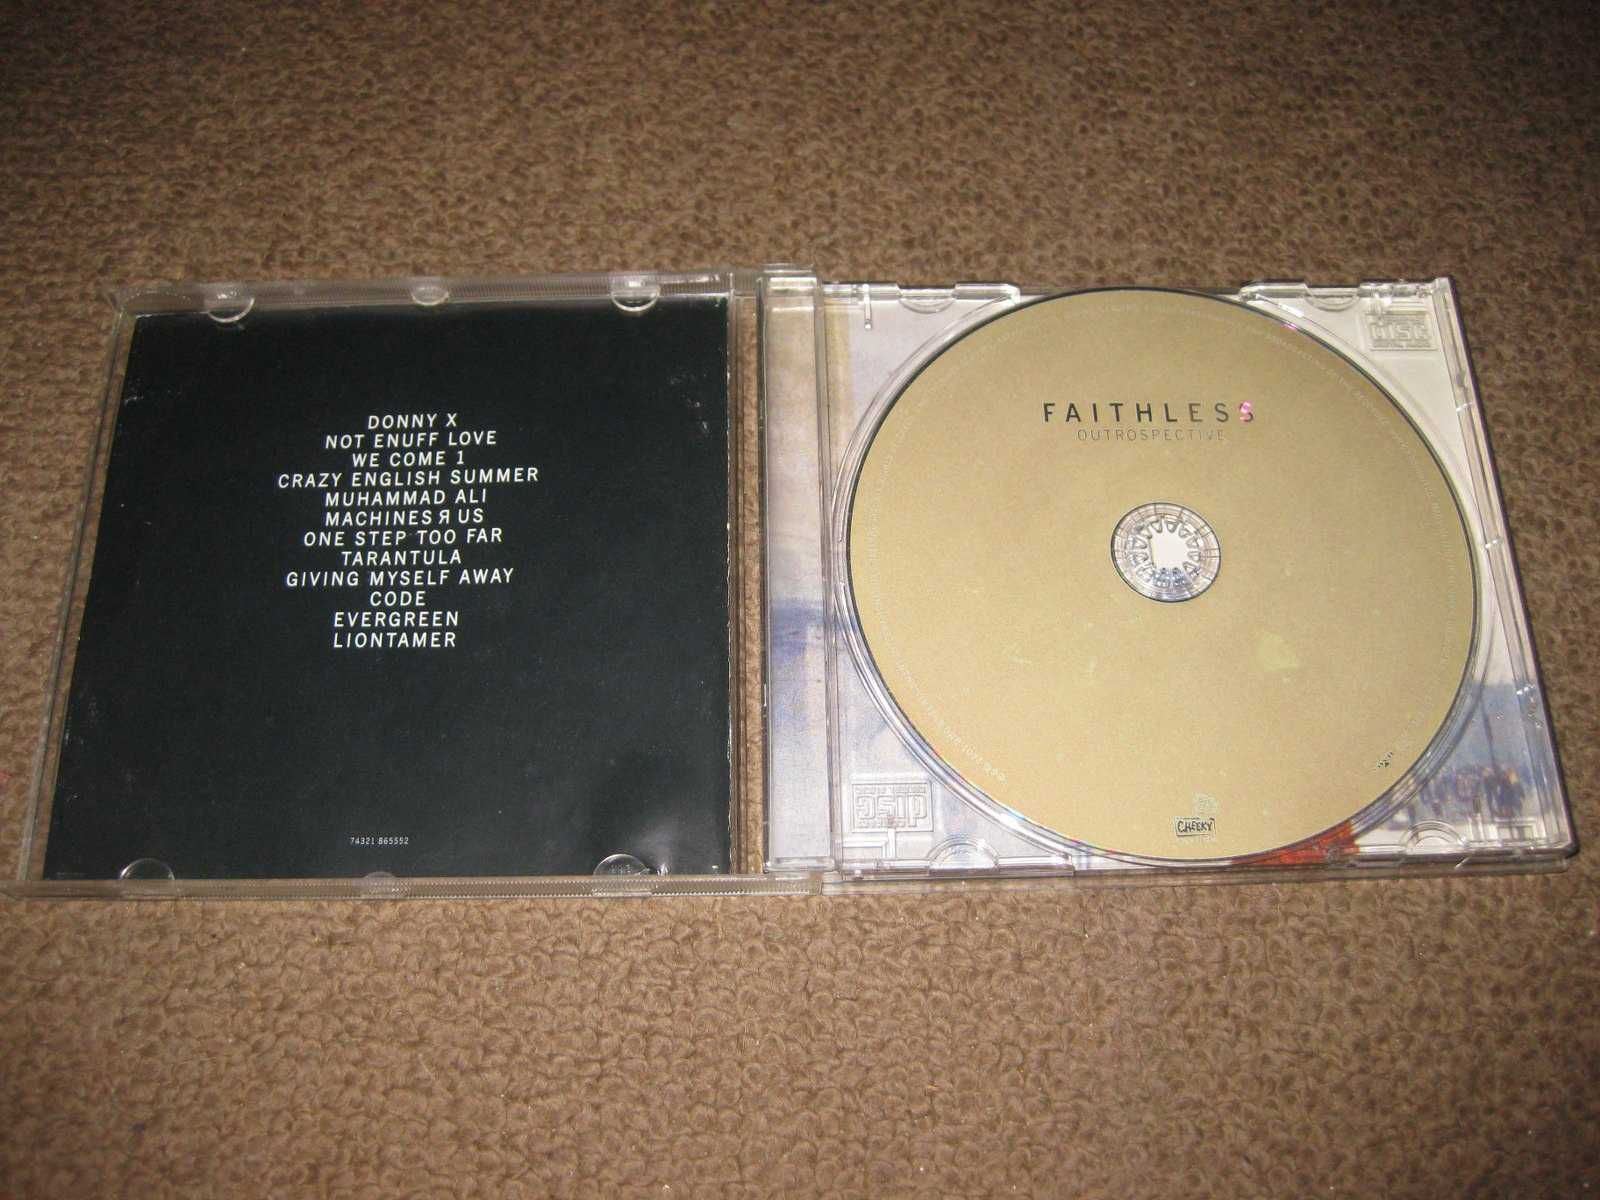 CD dos Faithless "Outrospective" Portes Grátis!